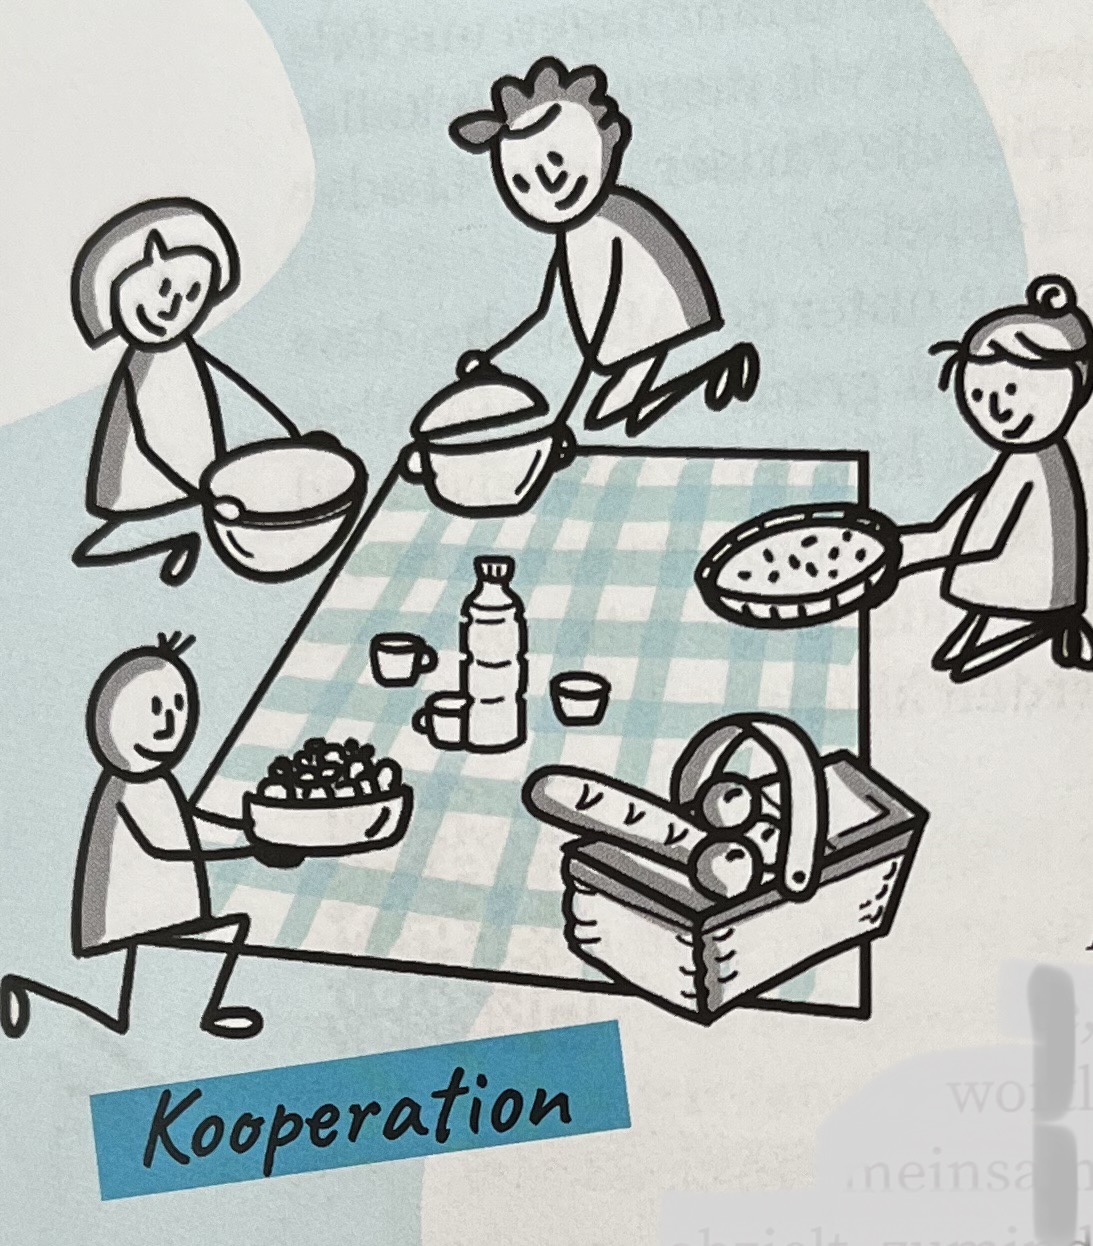 Abbildung zur Veranschaulichung von Kooperation, Nölte (2022), S. 12.